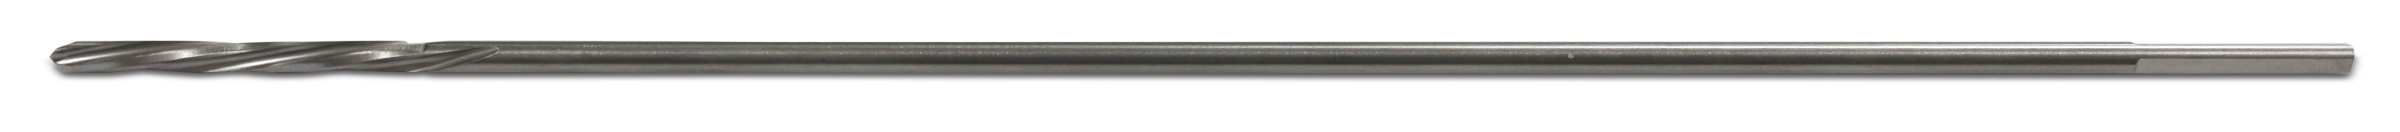 Drill Bit Î¦3.2mmx250mm